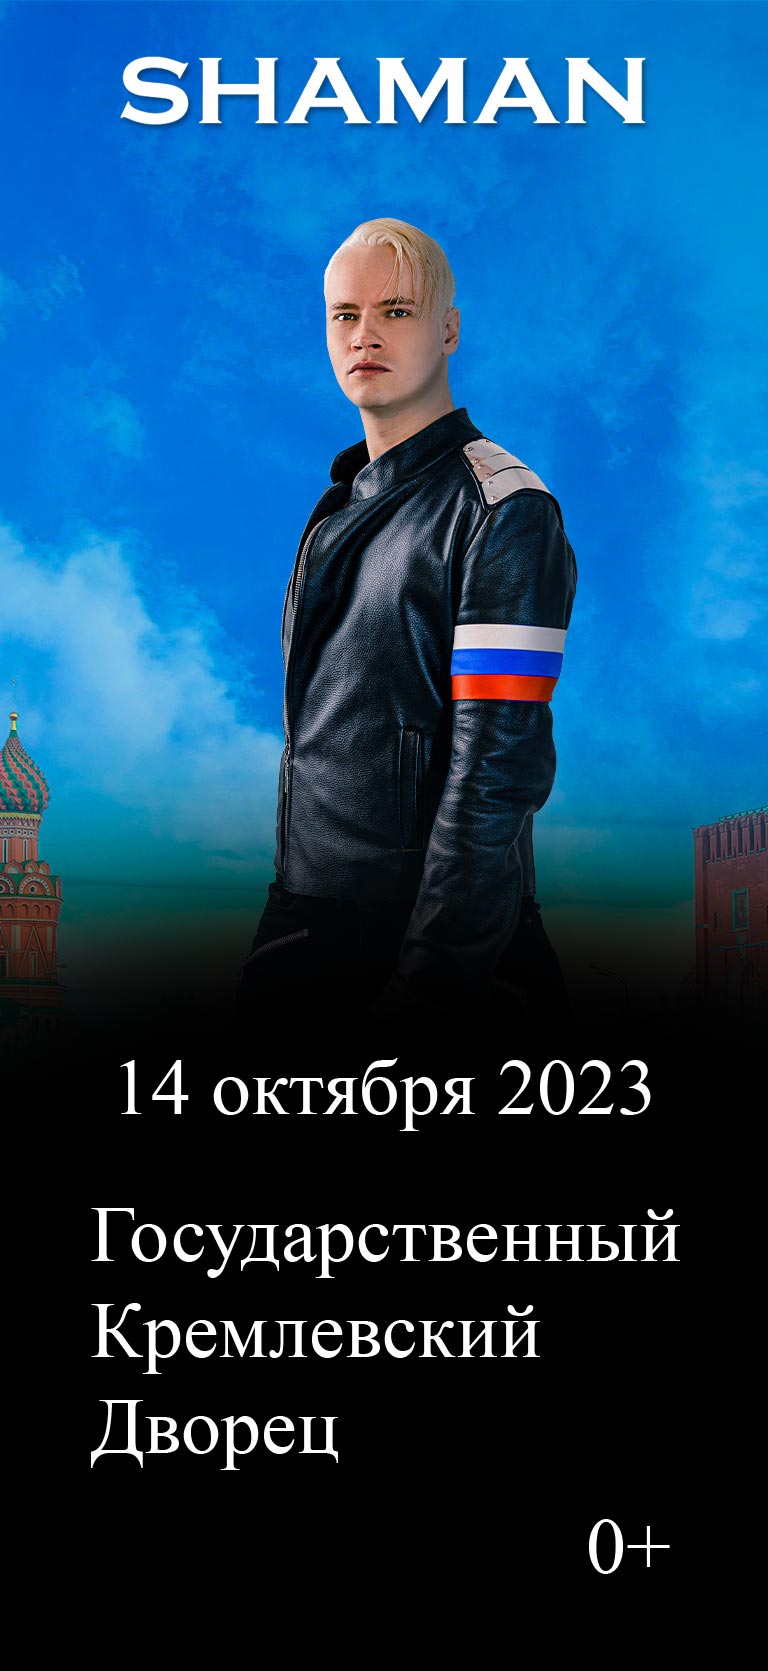 Купить Билеты на концерт Shaman 2023 в Государственном Кремлевском Дворце